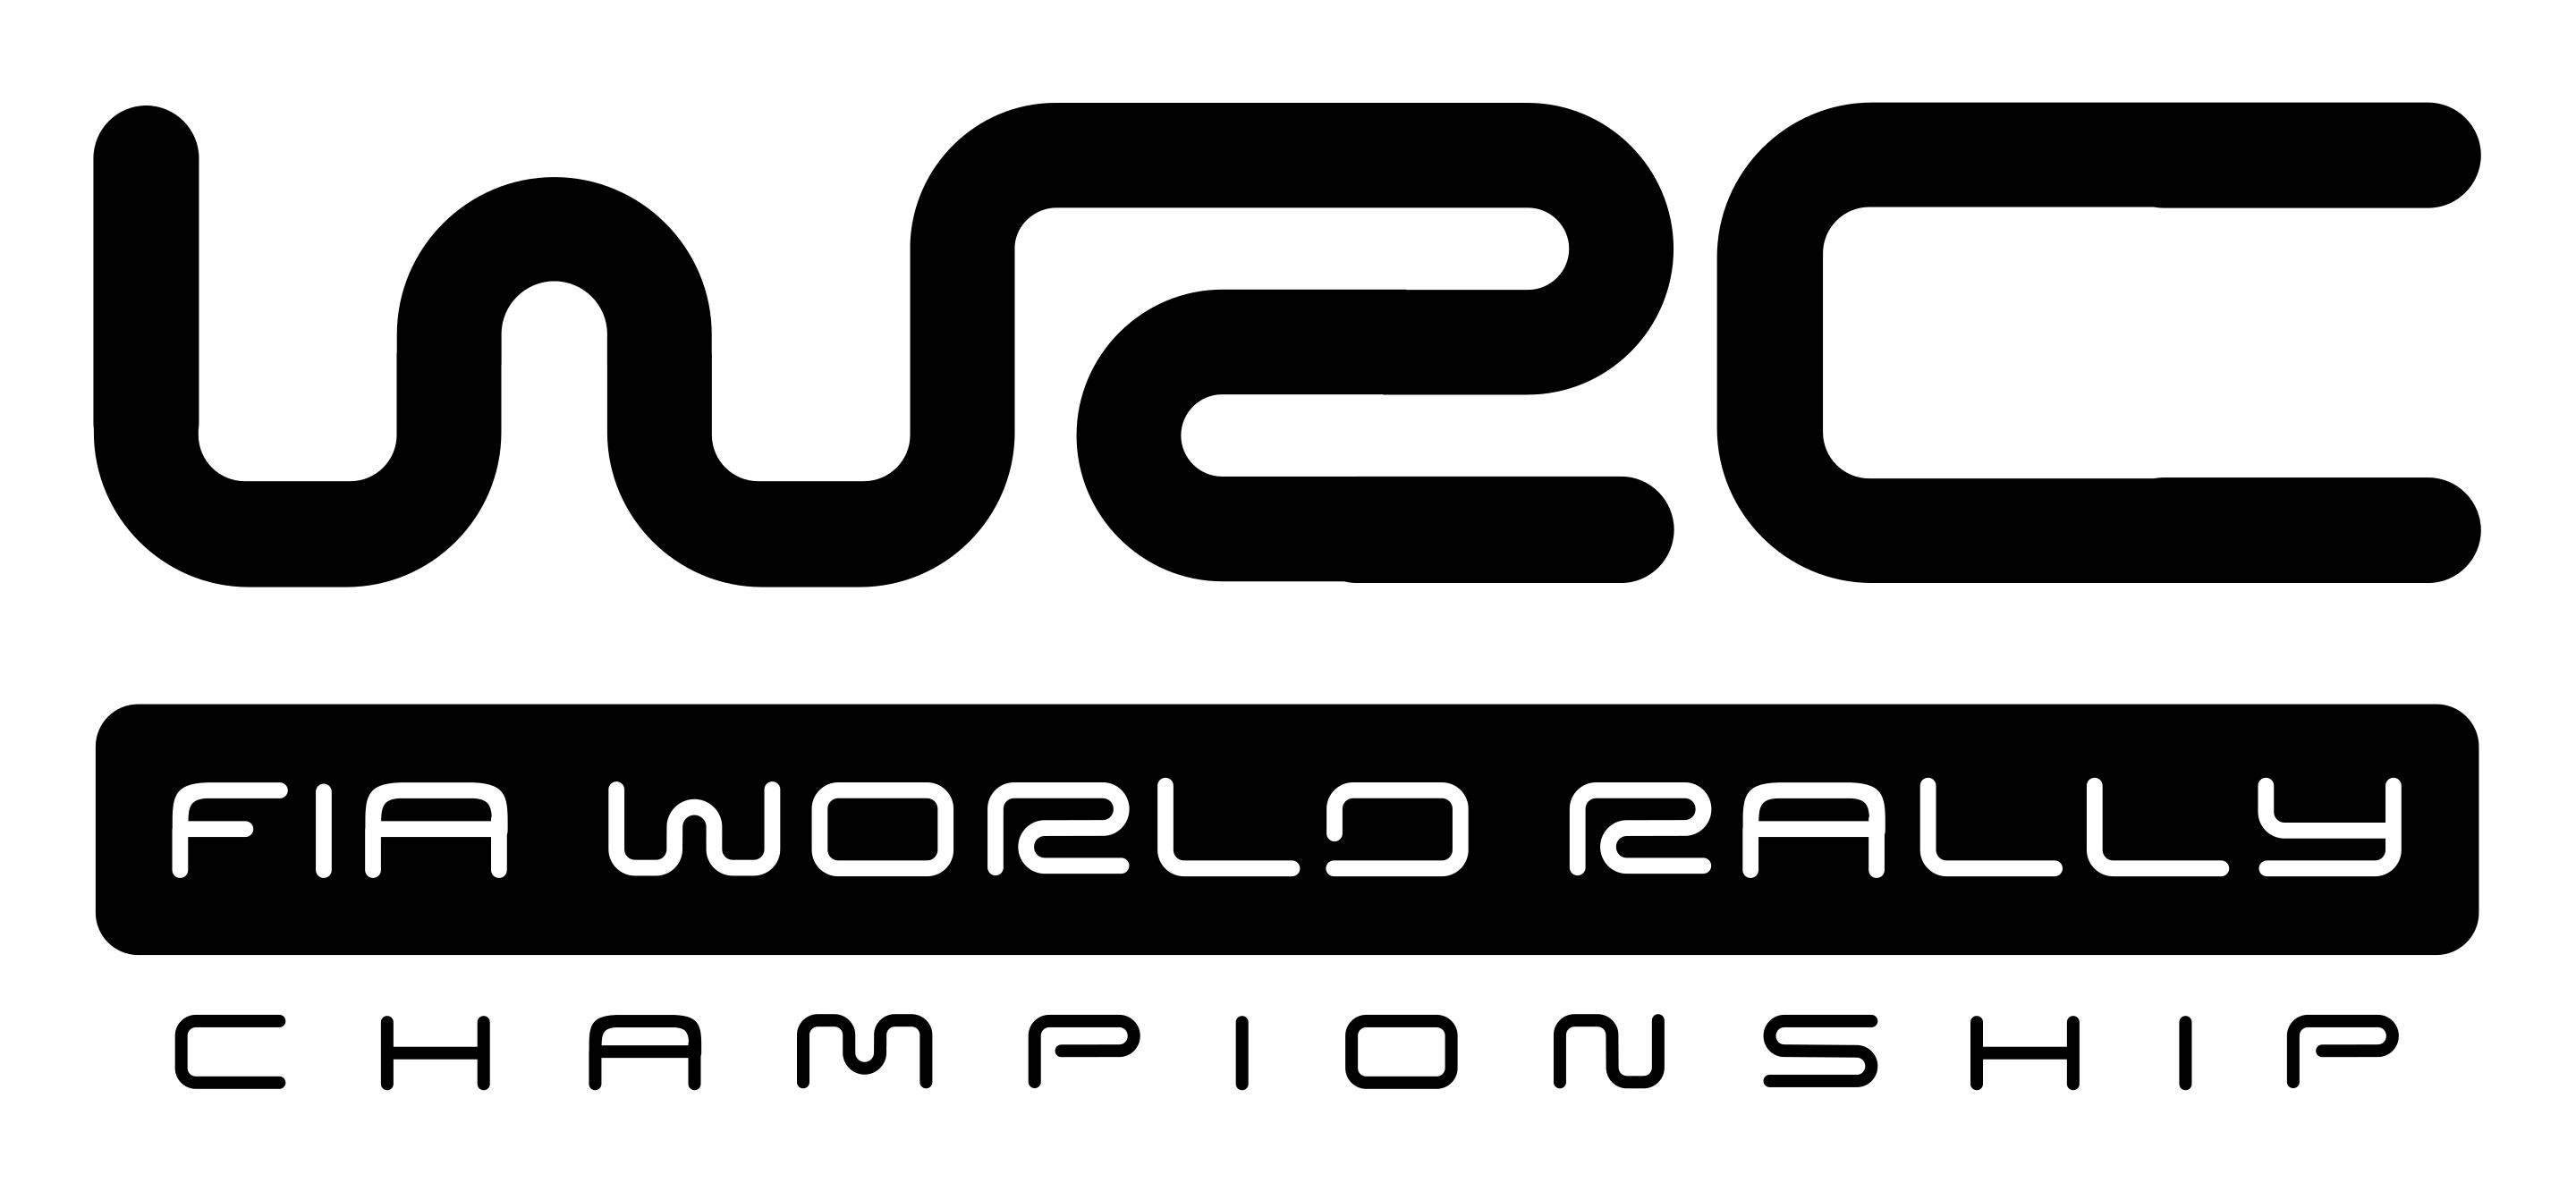 WRC Logo